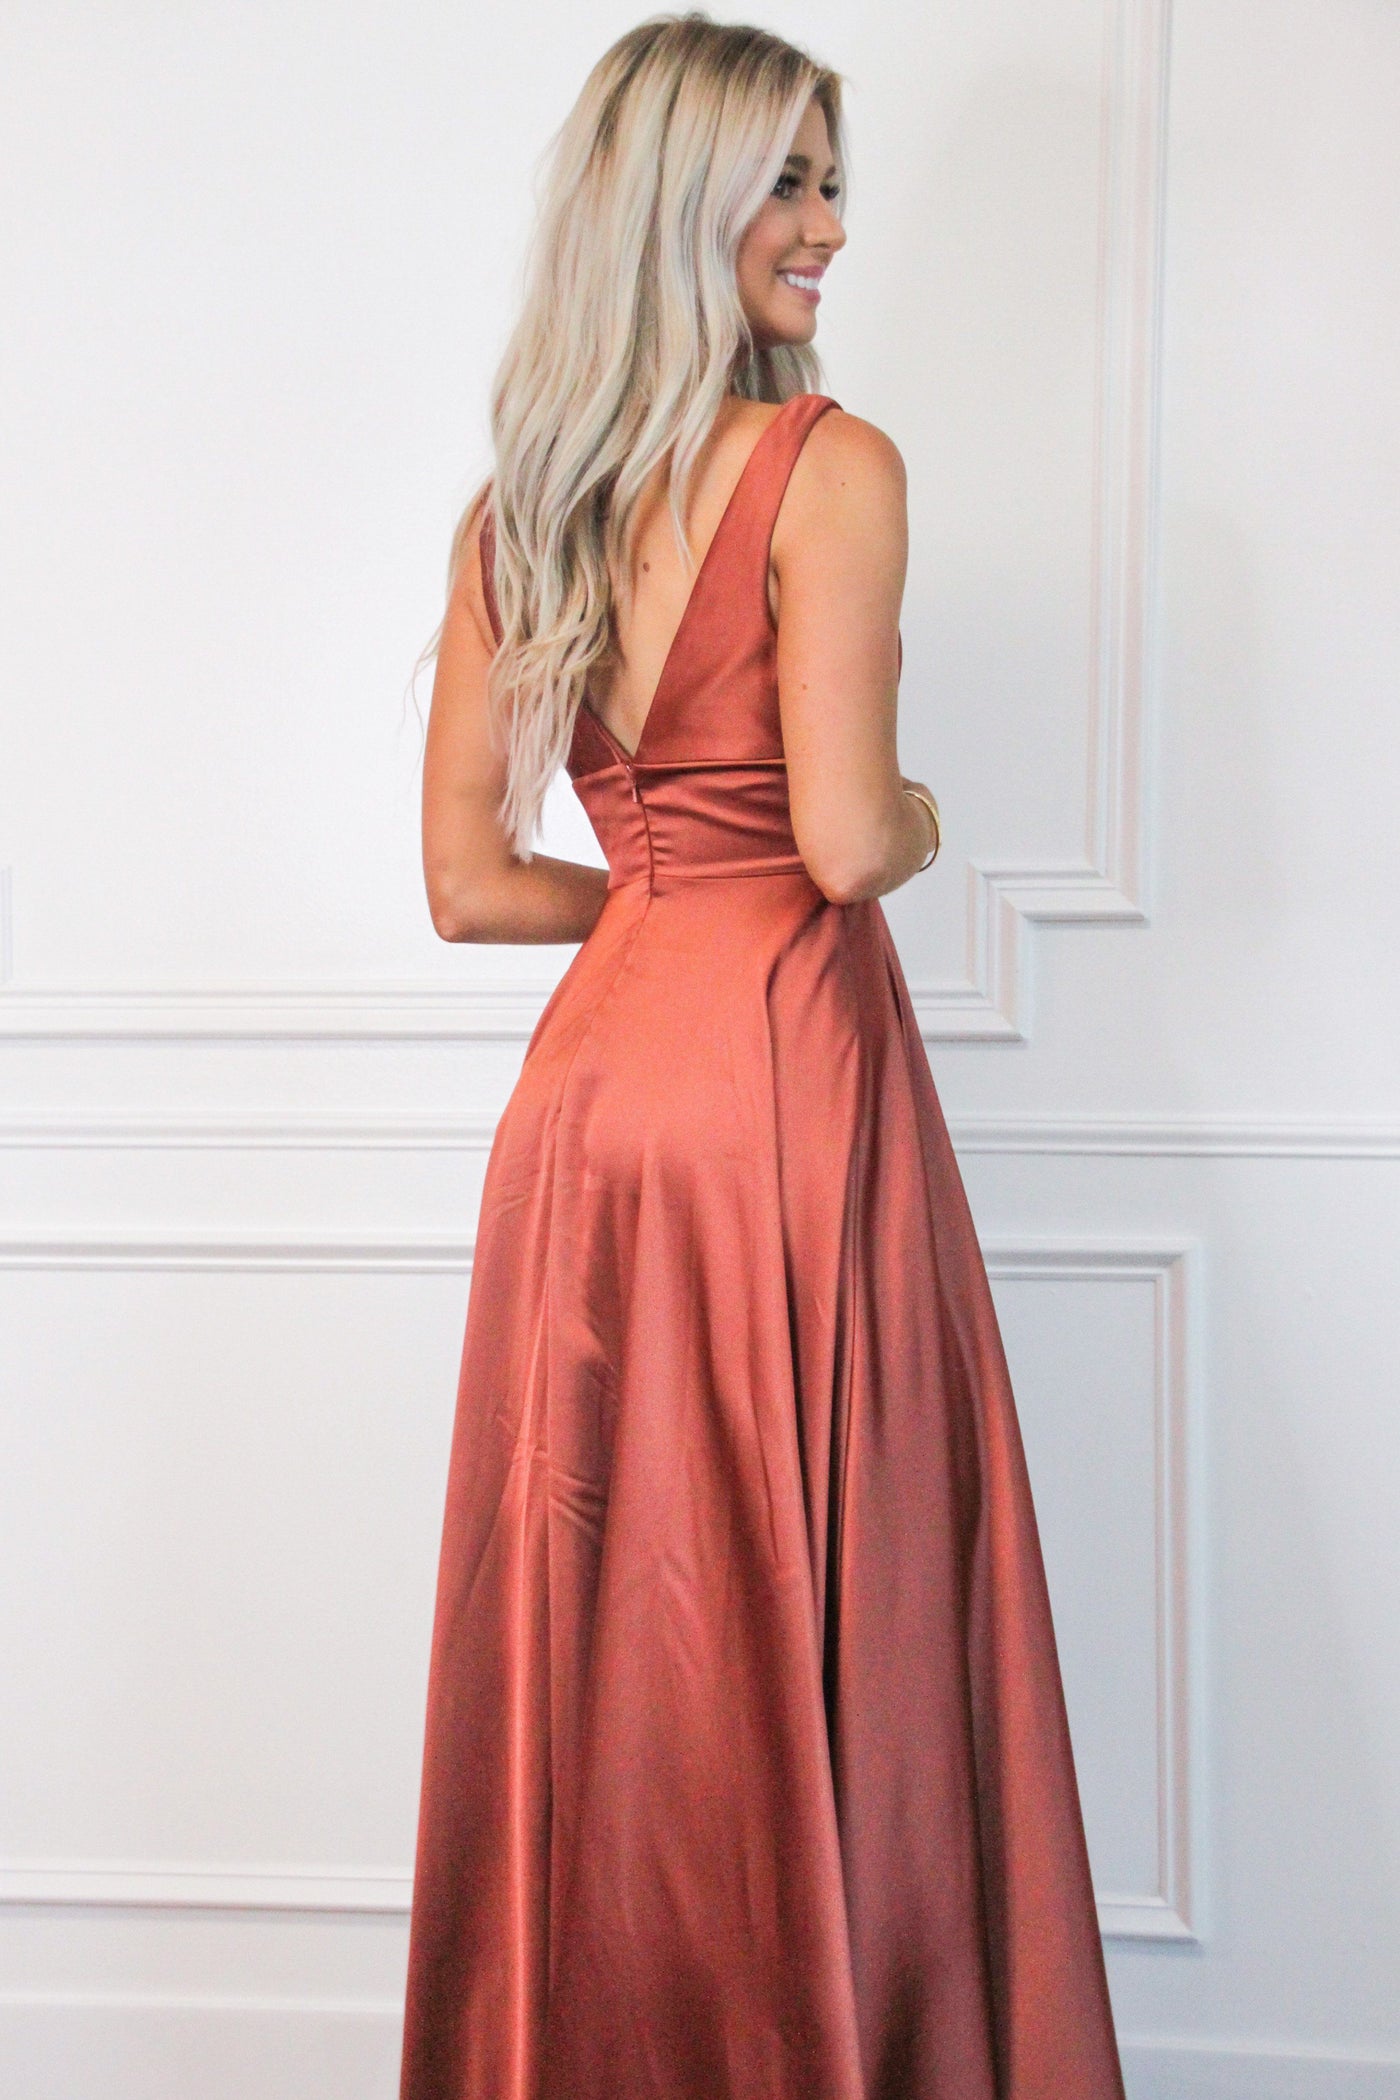 Remi Satin V-Neck Slit Formal Dress: Rust - Bella and Bloom Boutique